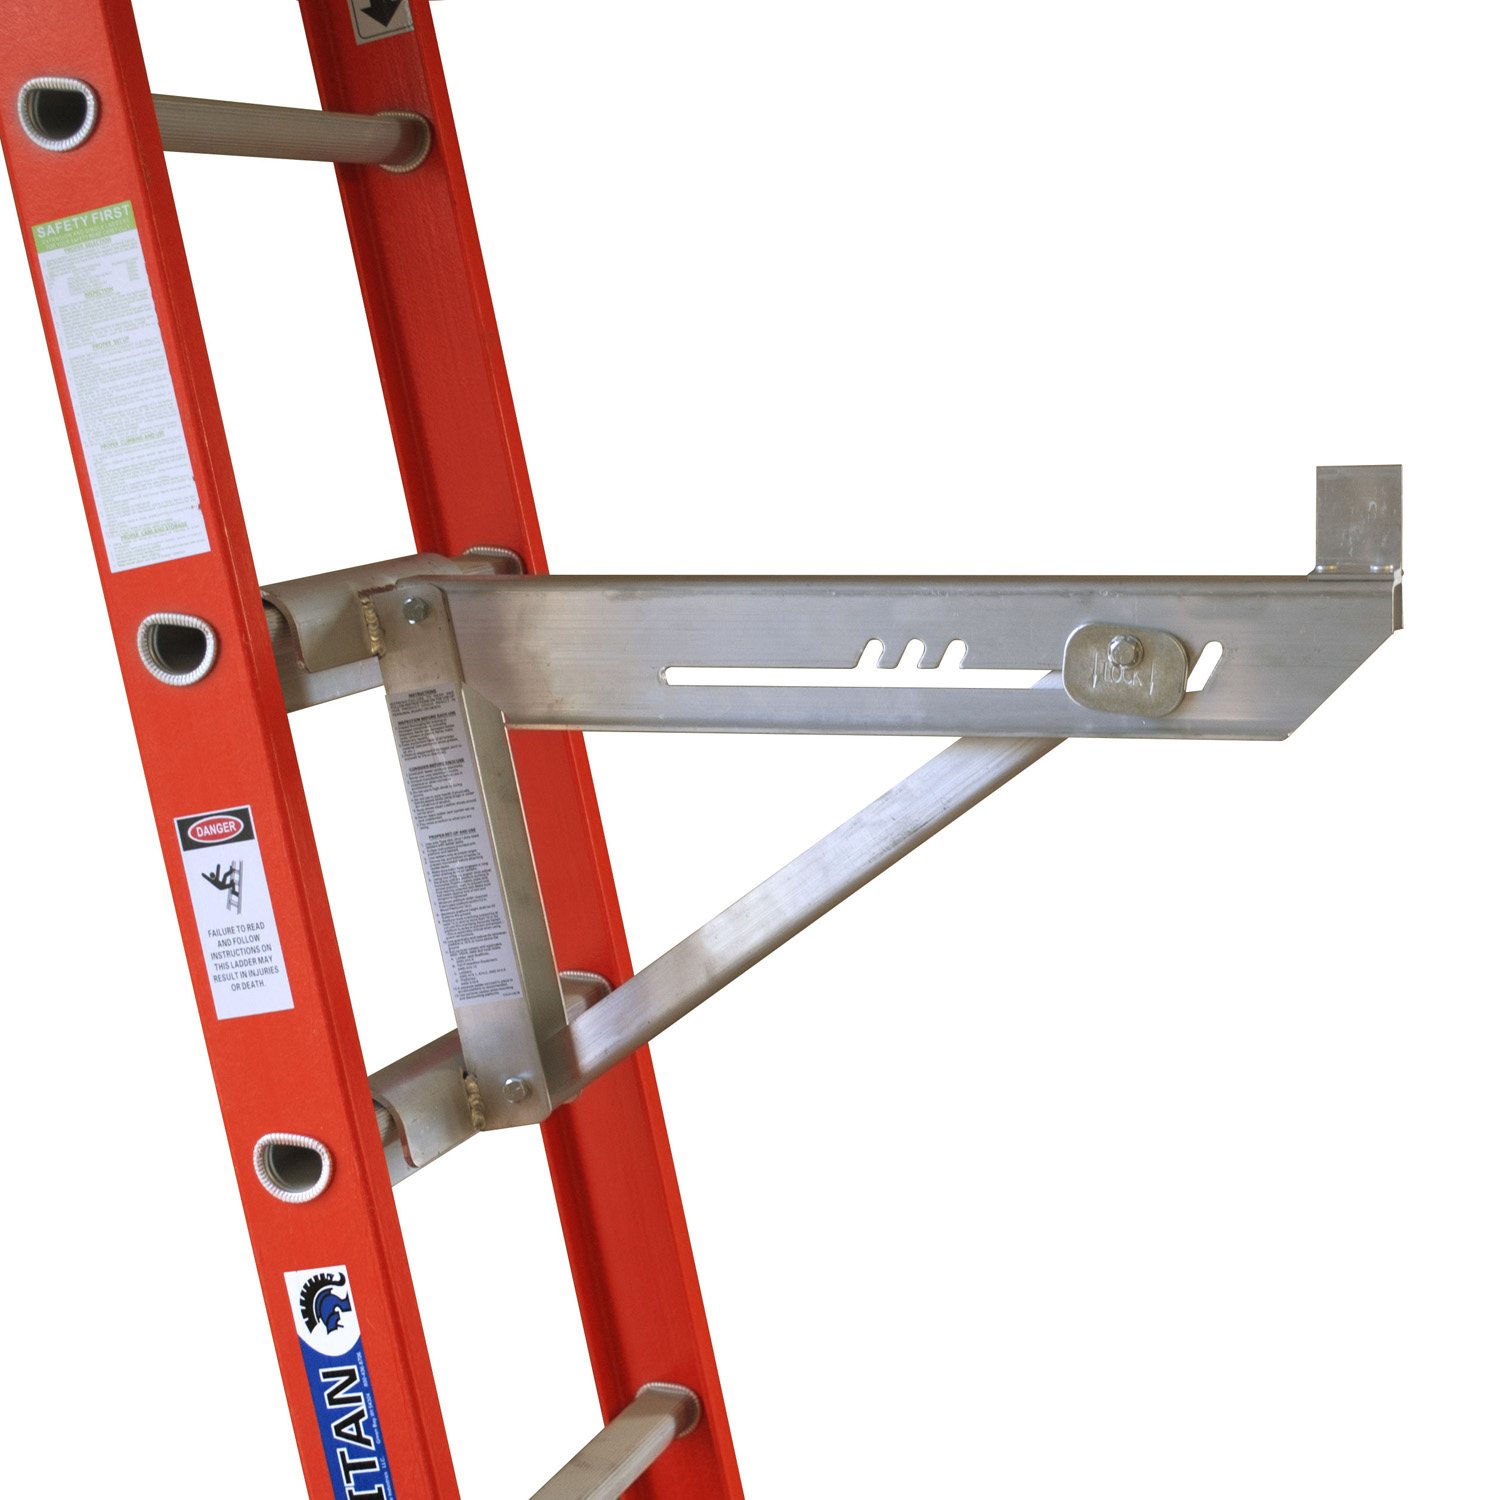 Ladder Accessories